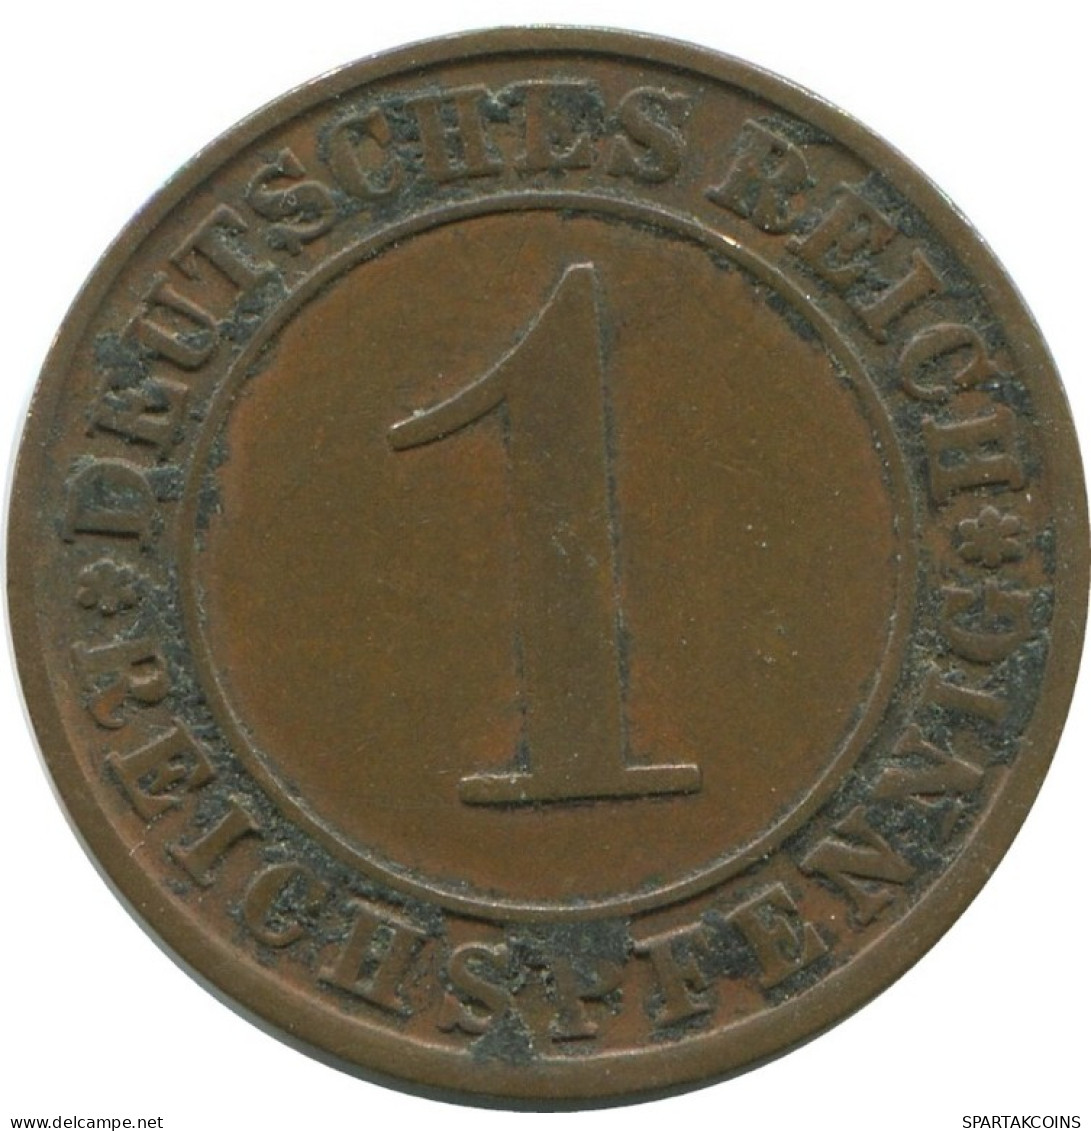 1 REICHSPFENNIG 1924 J GERMANY Coin #AD457.9.U.A - 1 Renten- & 1 Reichspfennig